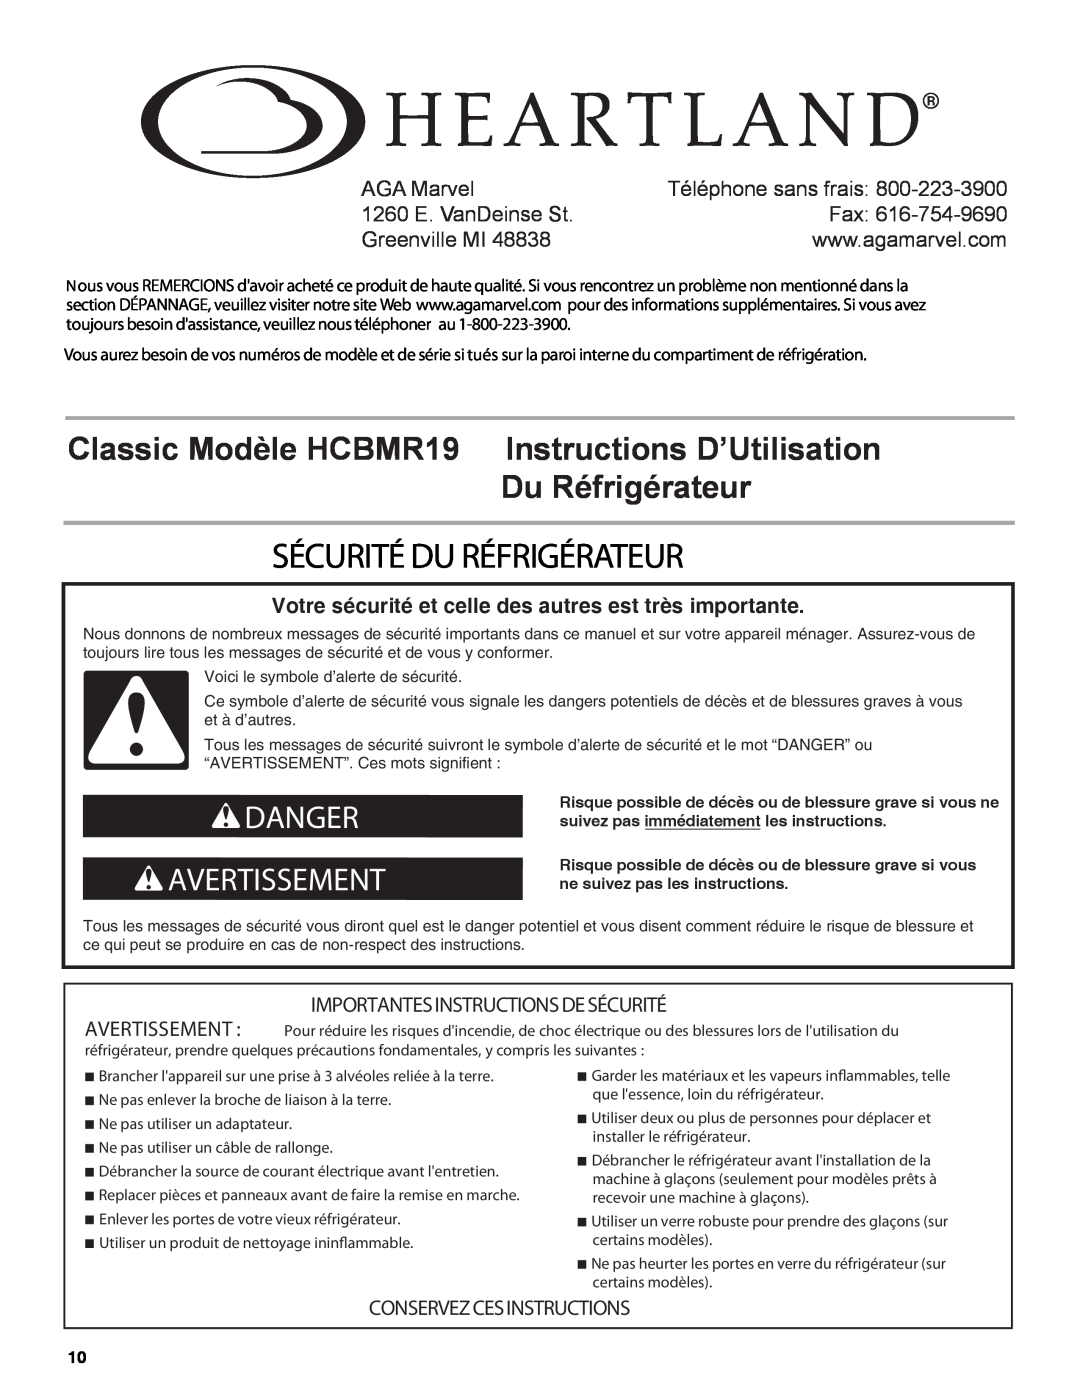 Heartland Sécurité Du Réfrigérateur, Classic Modèle HCBMR19 Instructions D’Utilisation Du Réfrigérateur, AGA Marvel 